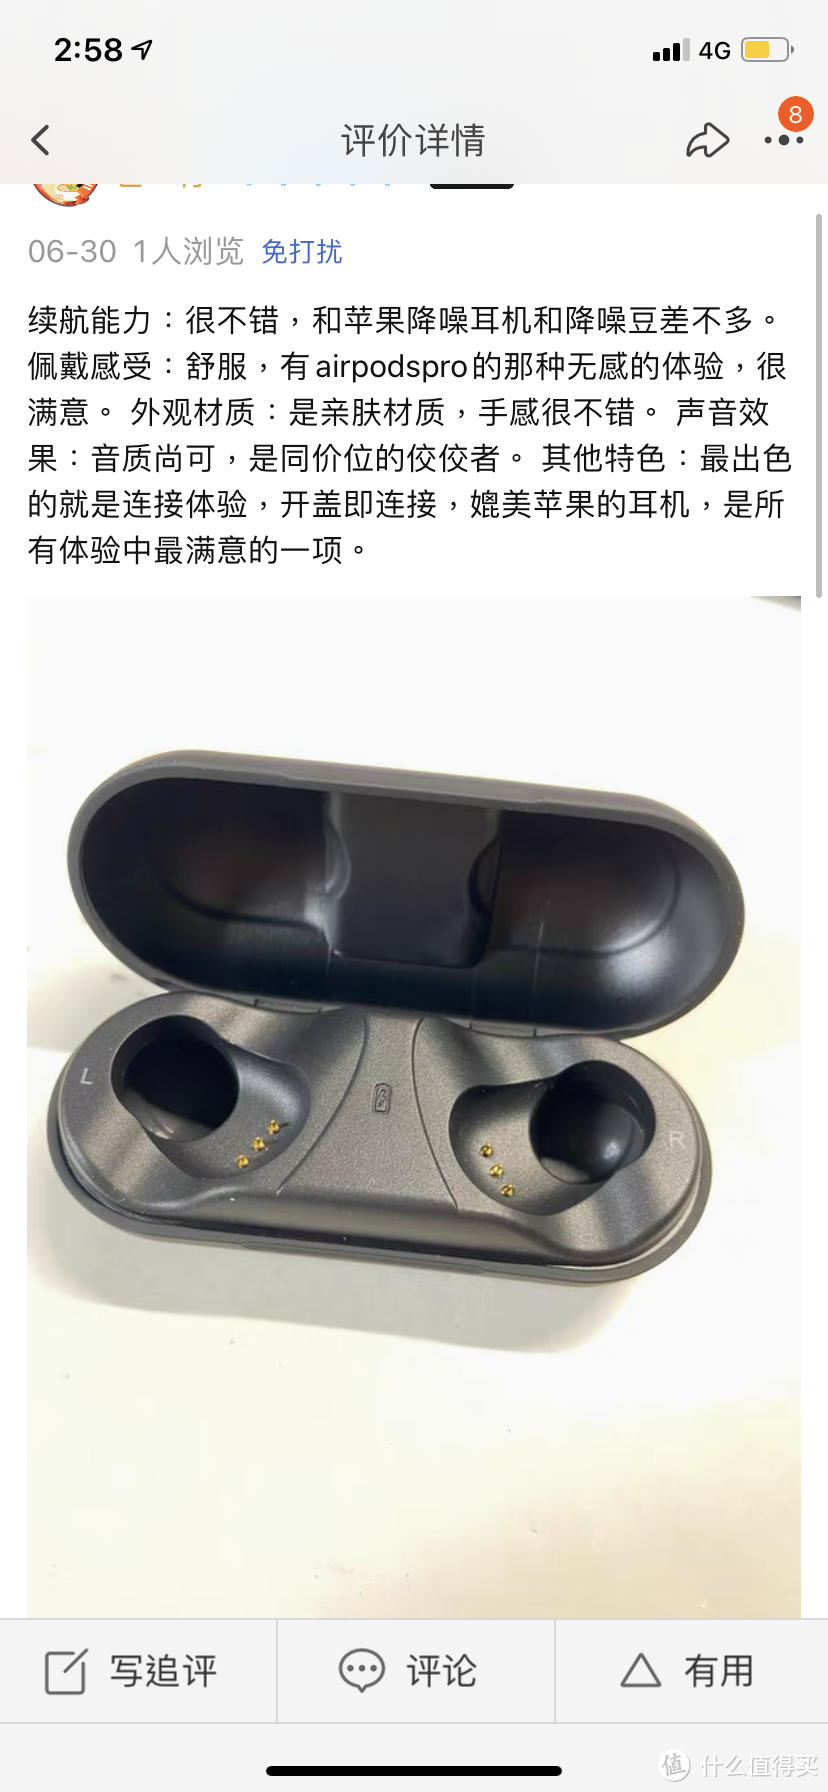 海外在售59美金真无线蓝牙耳机 5.0蓝牙 入耳式智能降噪 超长待机